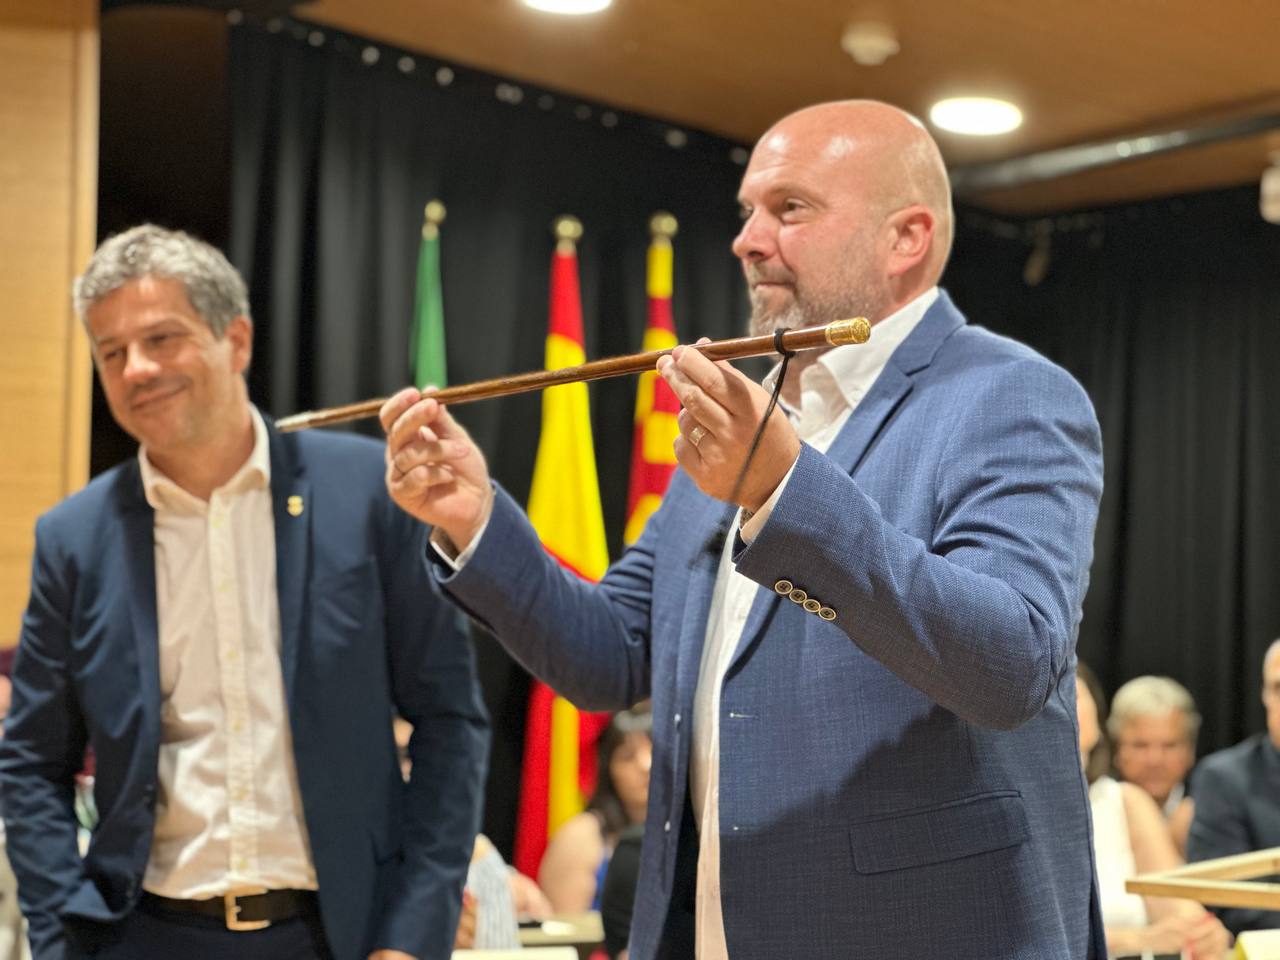 L'alcalde Jordi Parent rep la vara d'alcalde